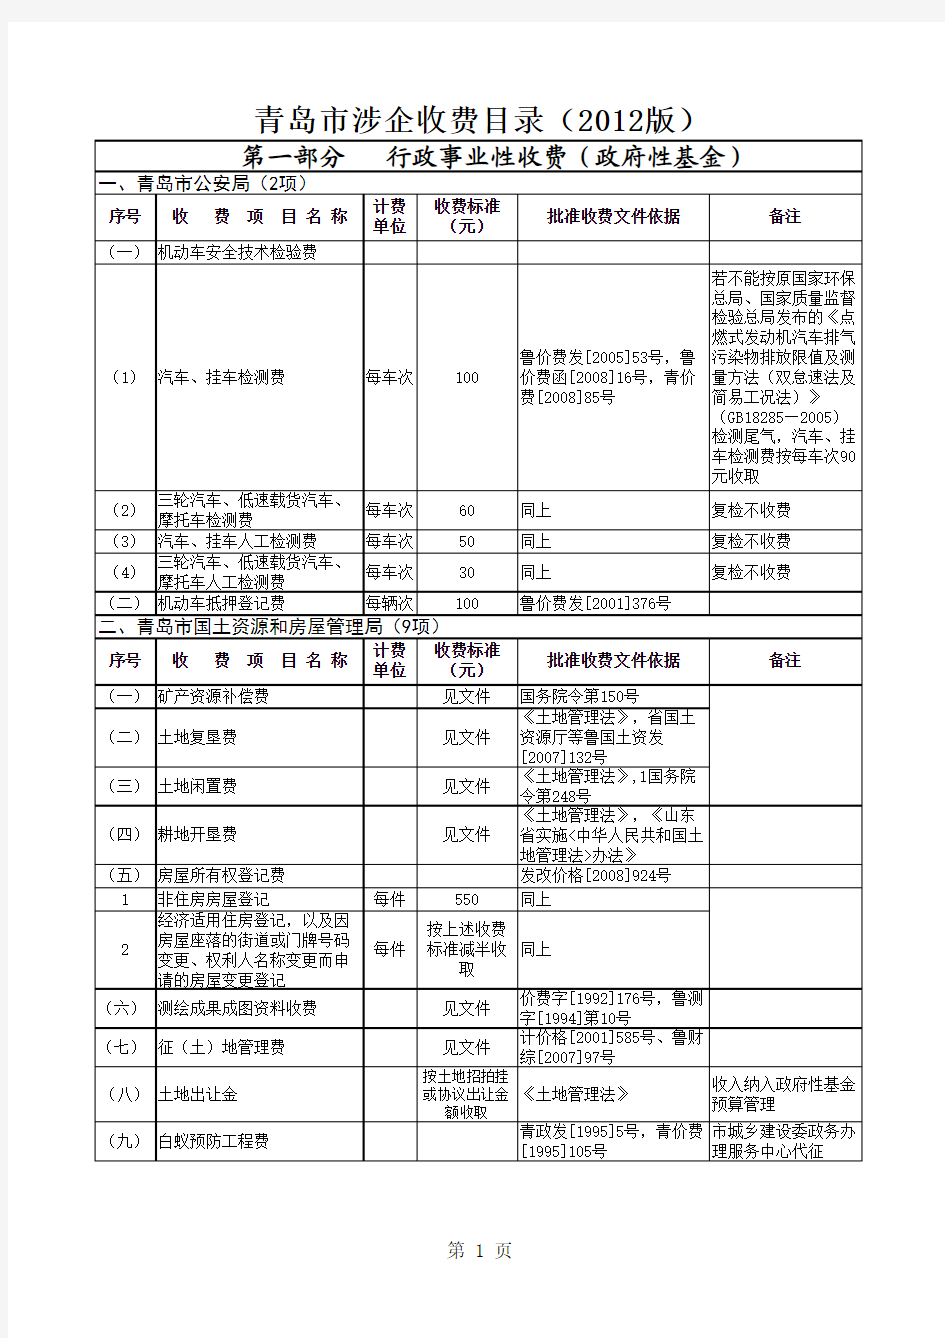 青岛市涉企收费目录(2012版)